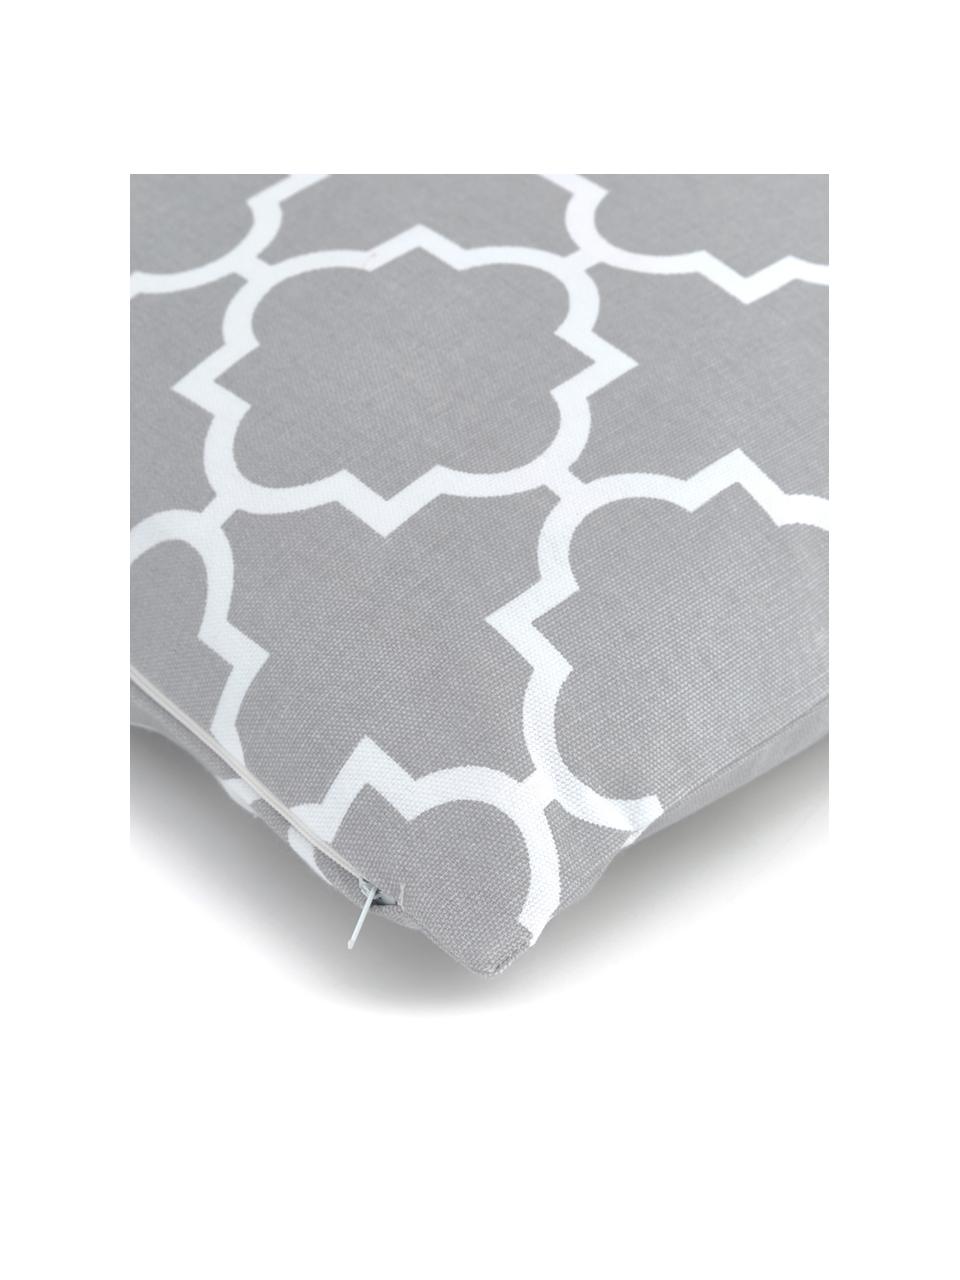 Kissenhülle Lana mit grafischem Muster, 100% Baumwolle, Grau, Weiß, B 45 x L 45 cm